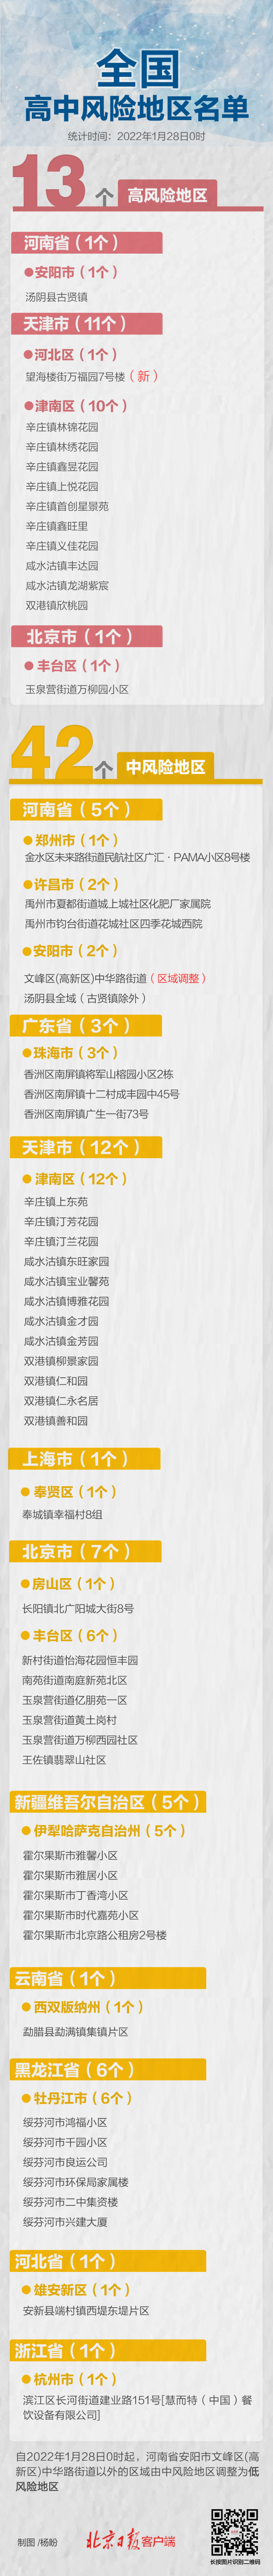 天津高风险区+1 全国高中风险区13+42个